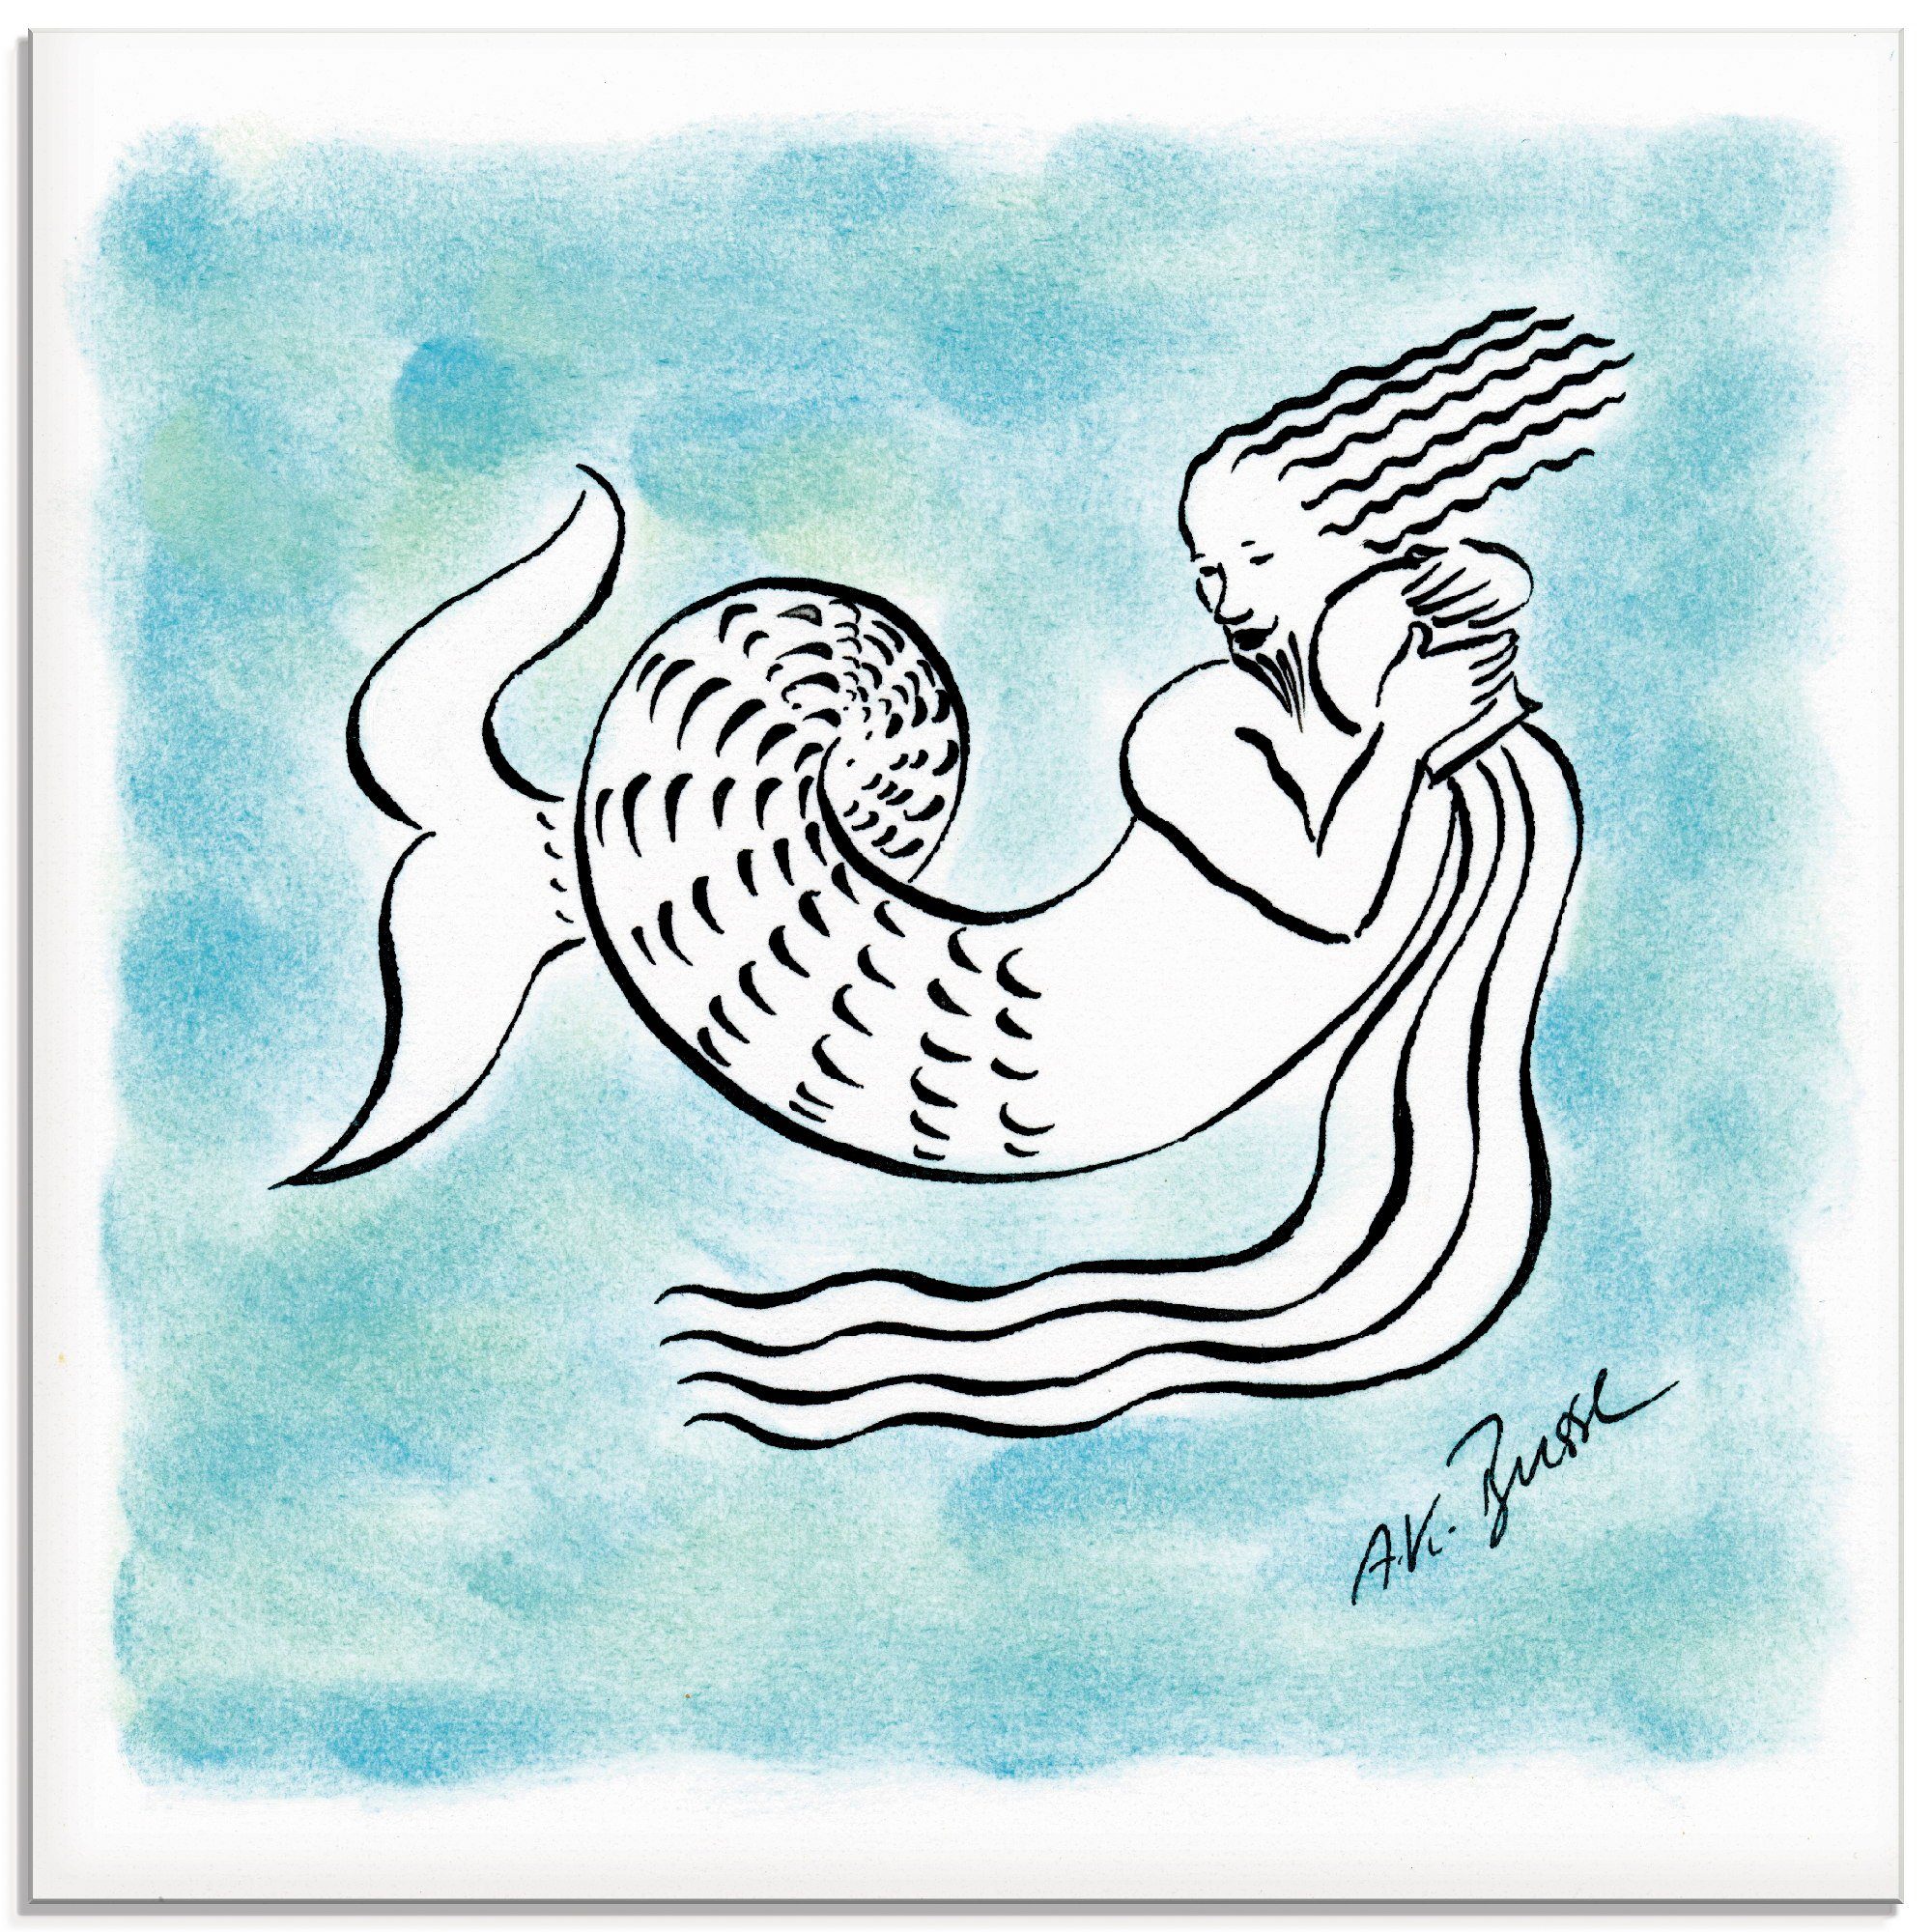 Artland Print op glas Serie sterrenbeeld waterman (1 stuk)